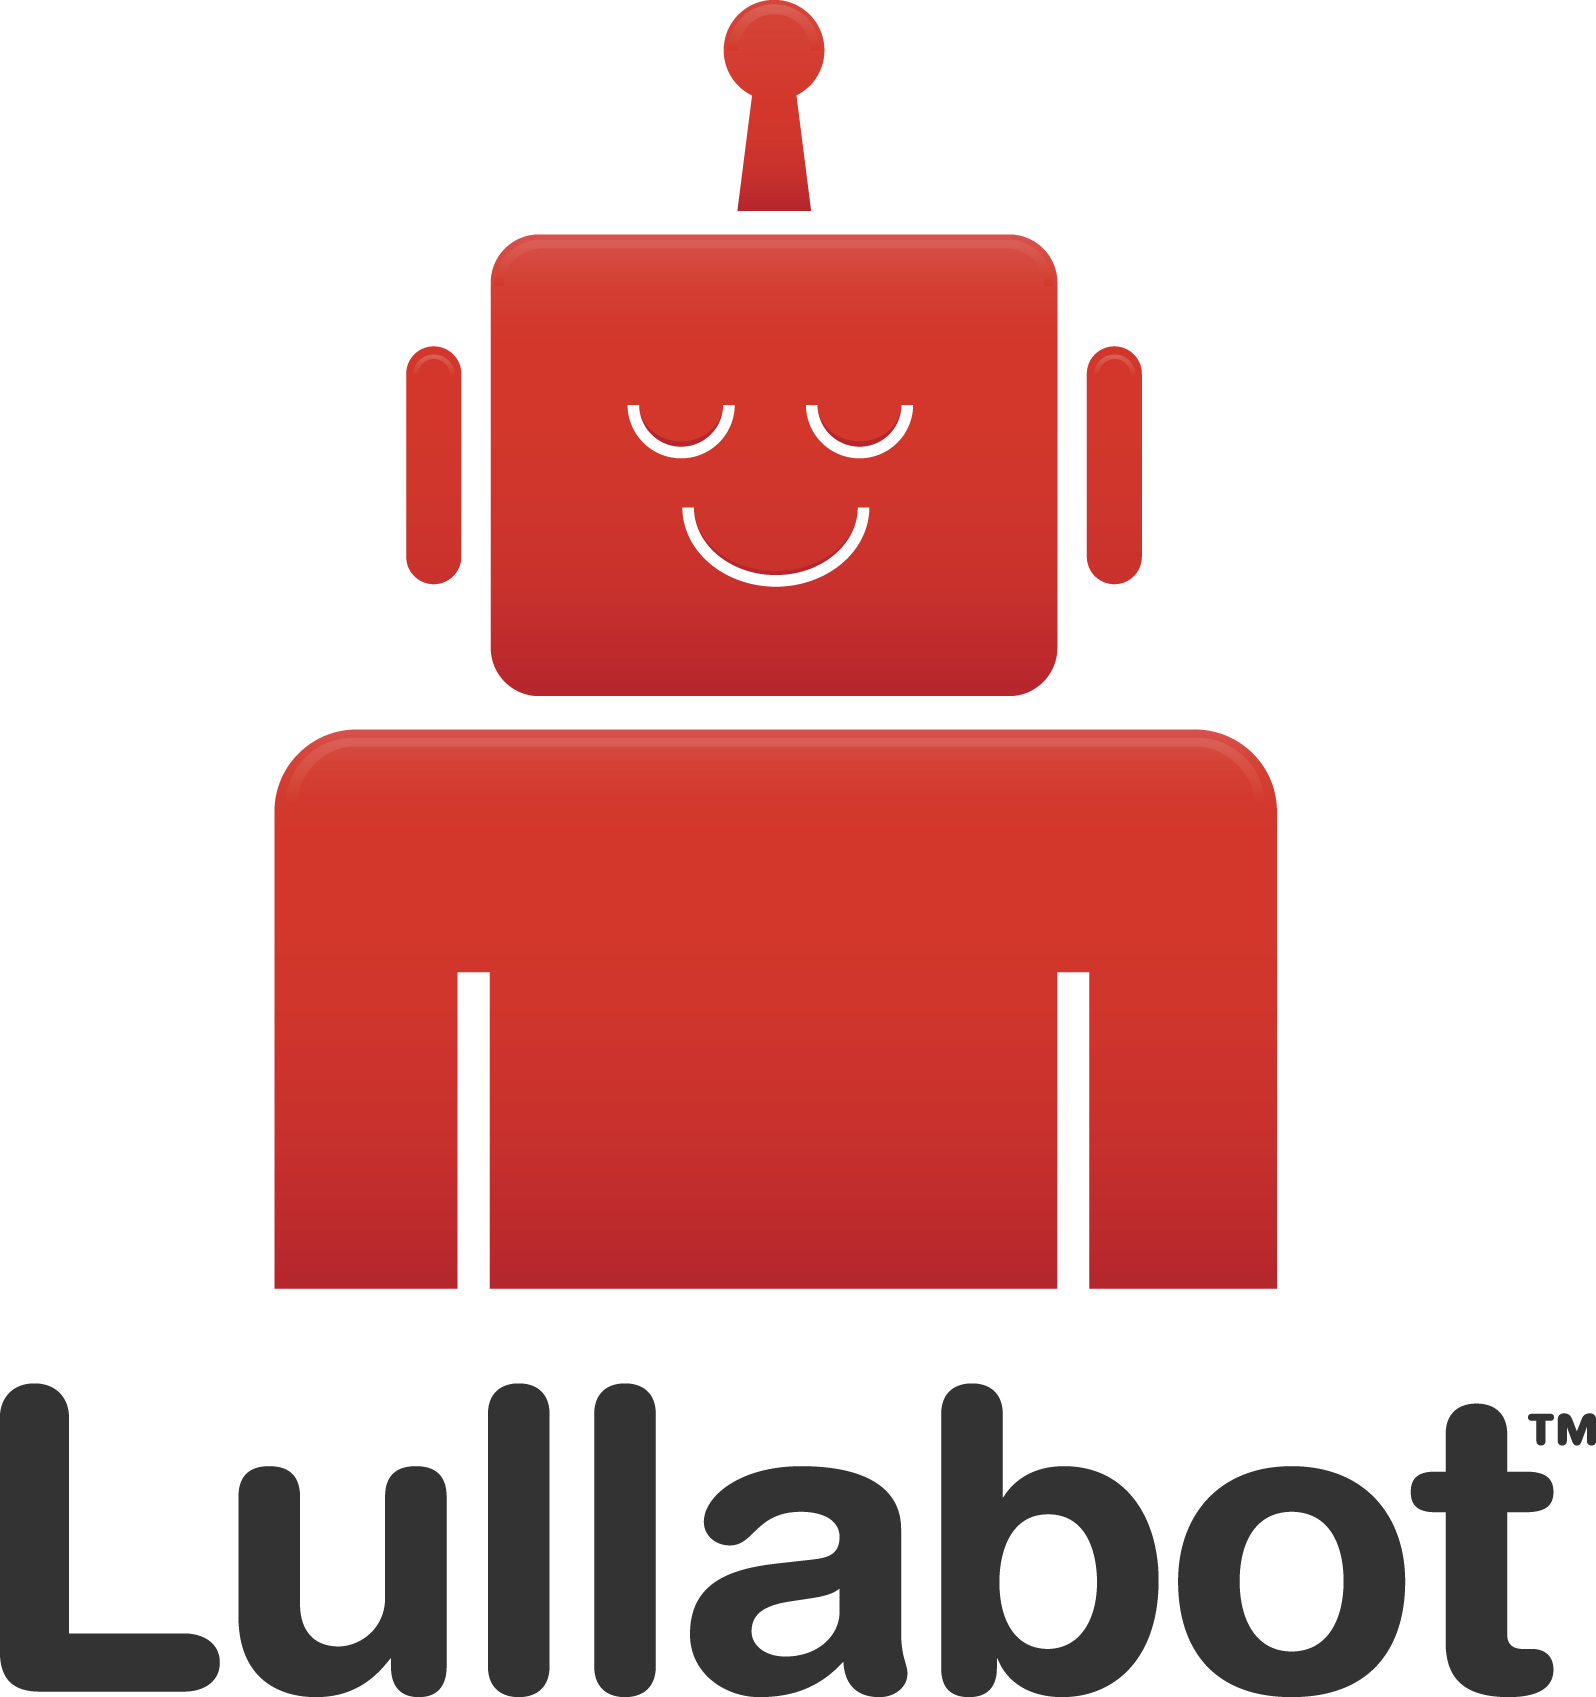 lullabot-logo